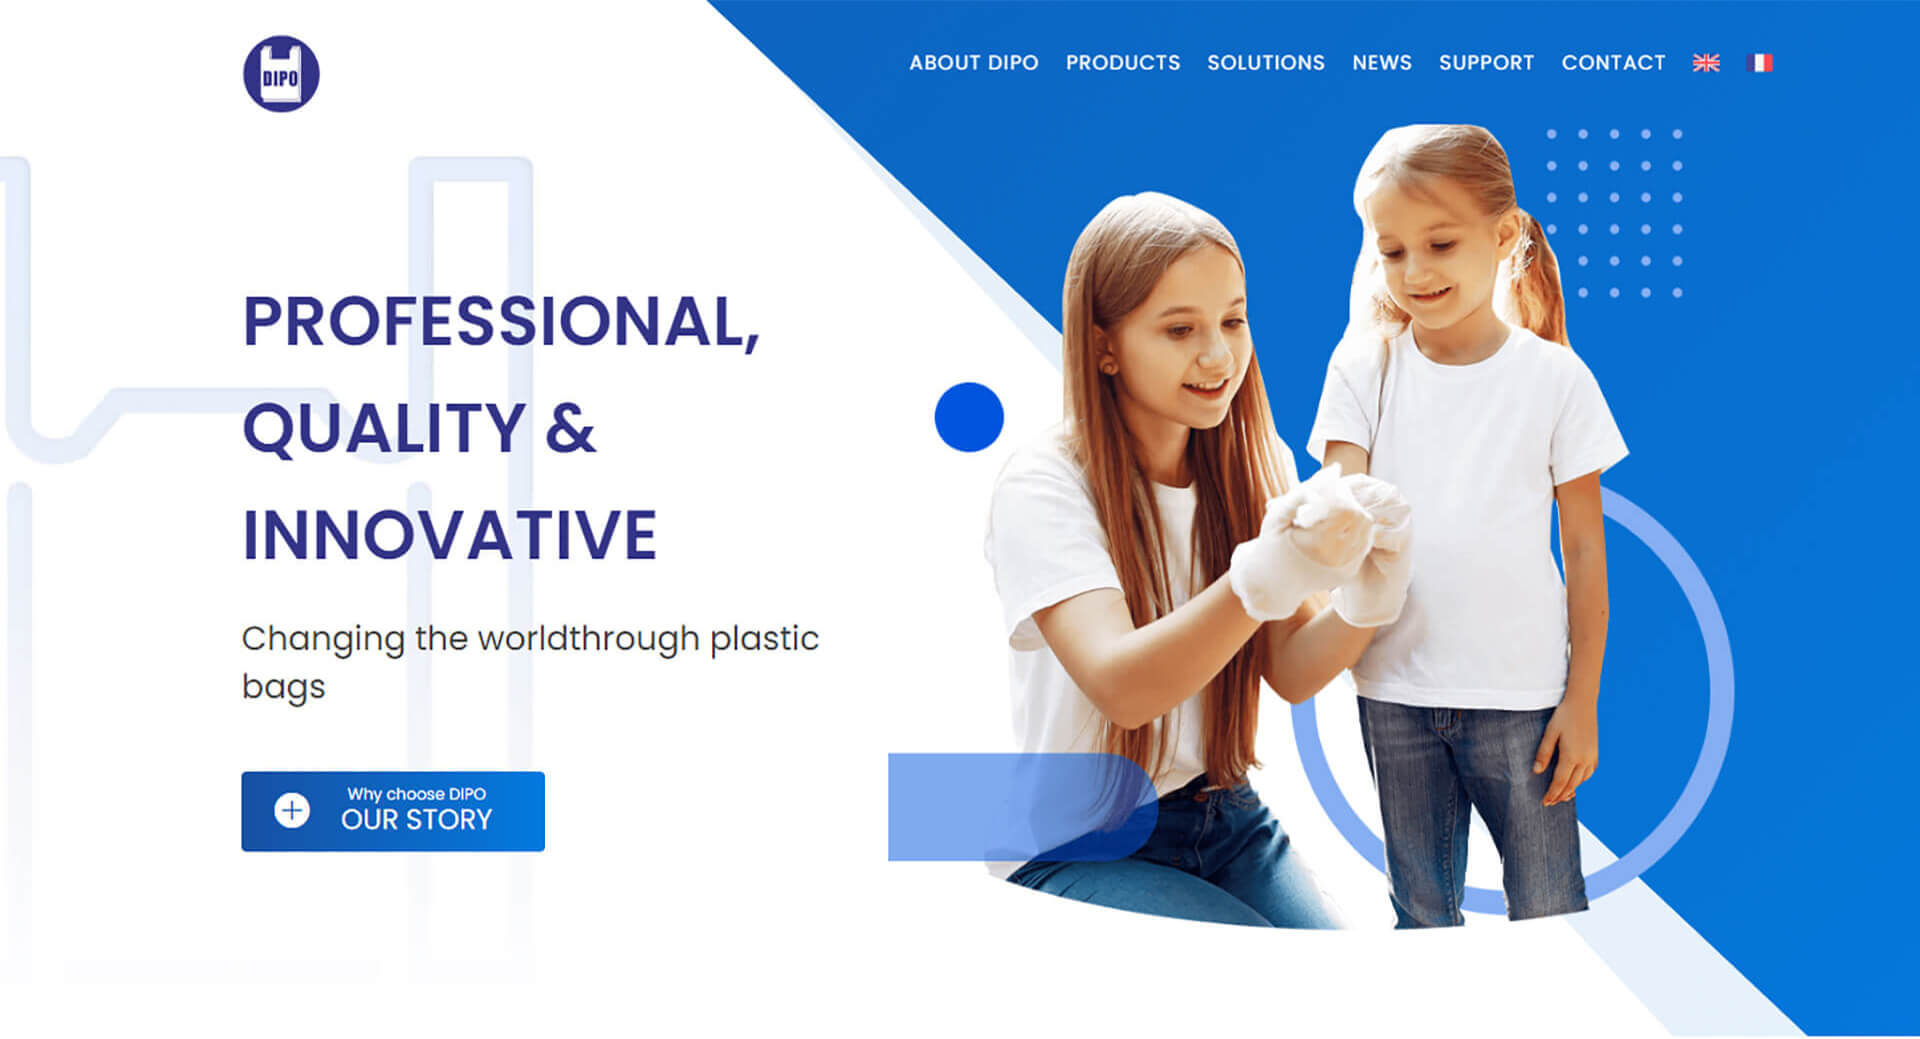 袋寶塑膠機械網站設計客製化RWD網站, SEO網路行銷, 承租空間